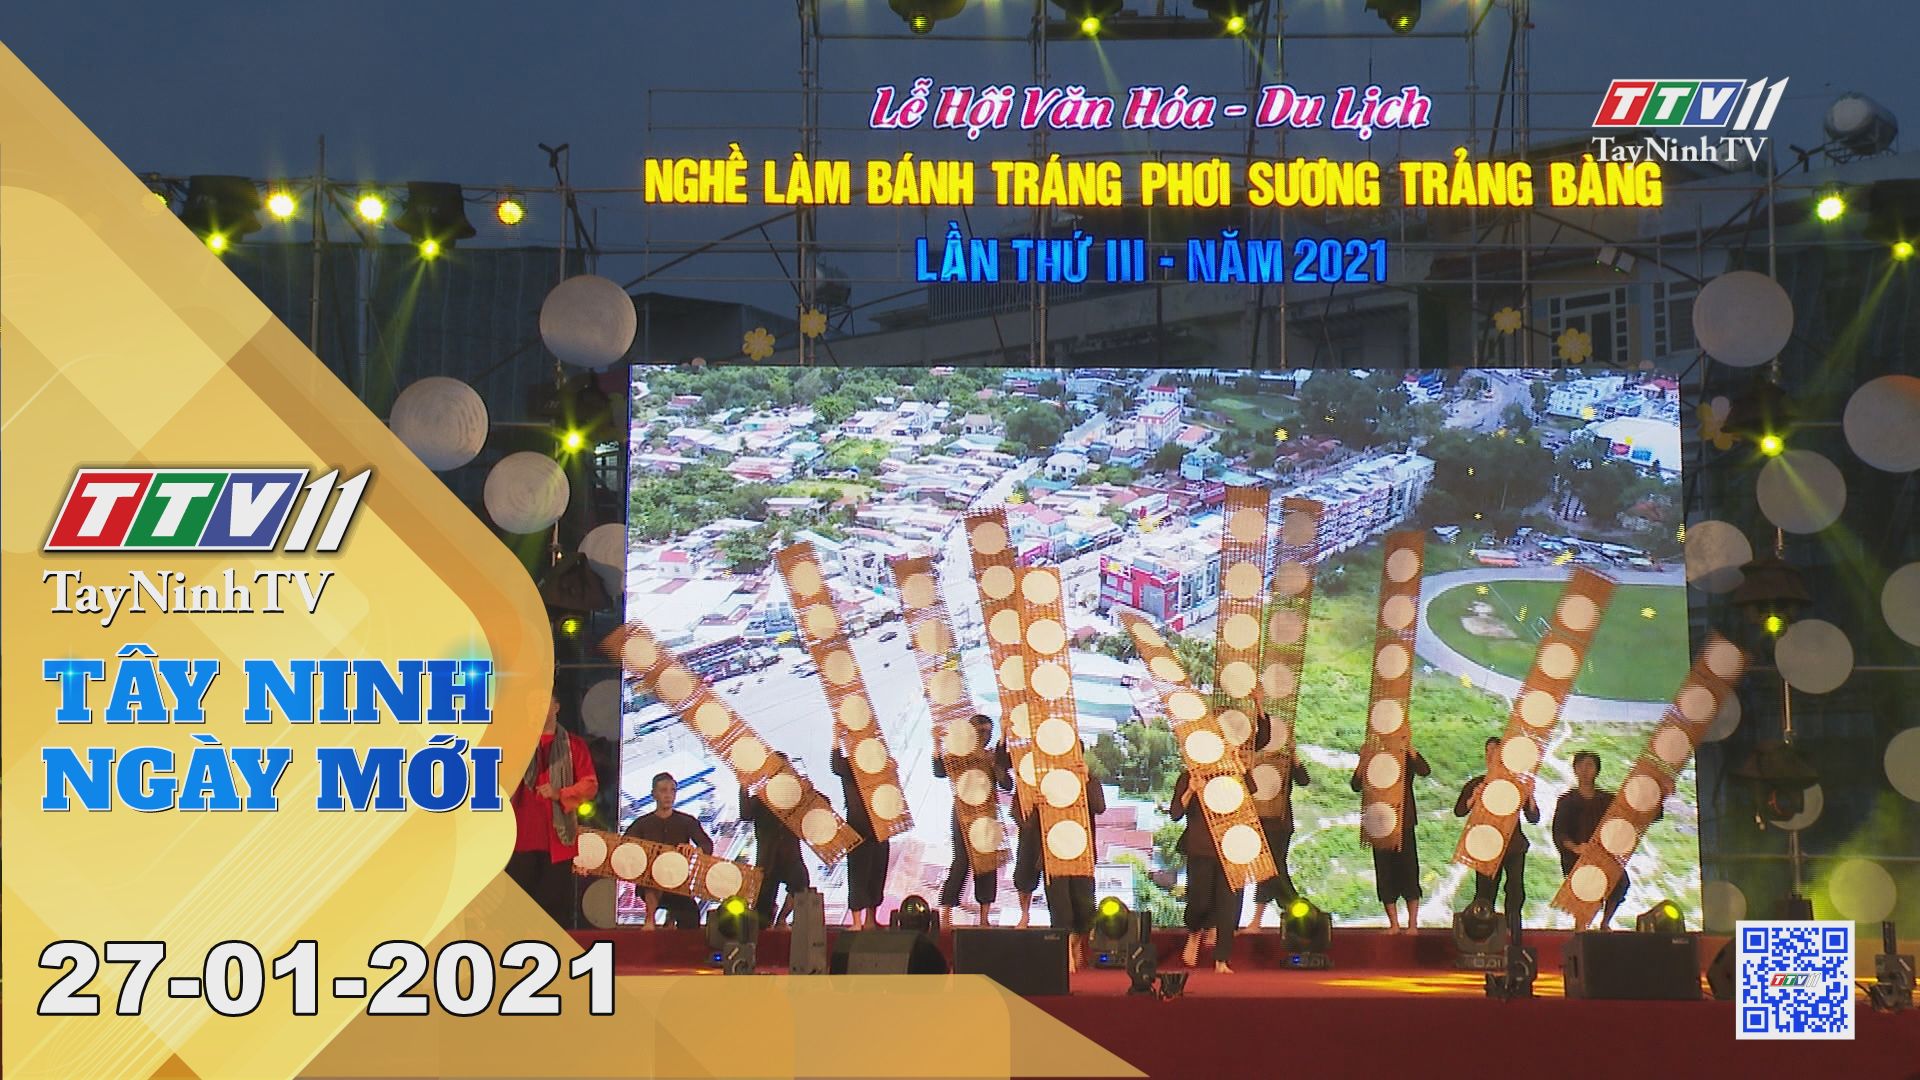 Tây Ninh Ngày Mới 27-01-2021 | Tin tức hôm nay | TayNinhTV